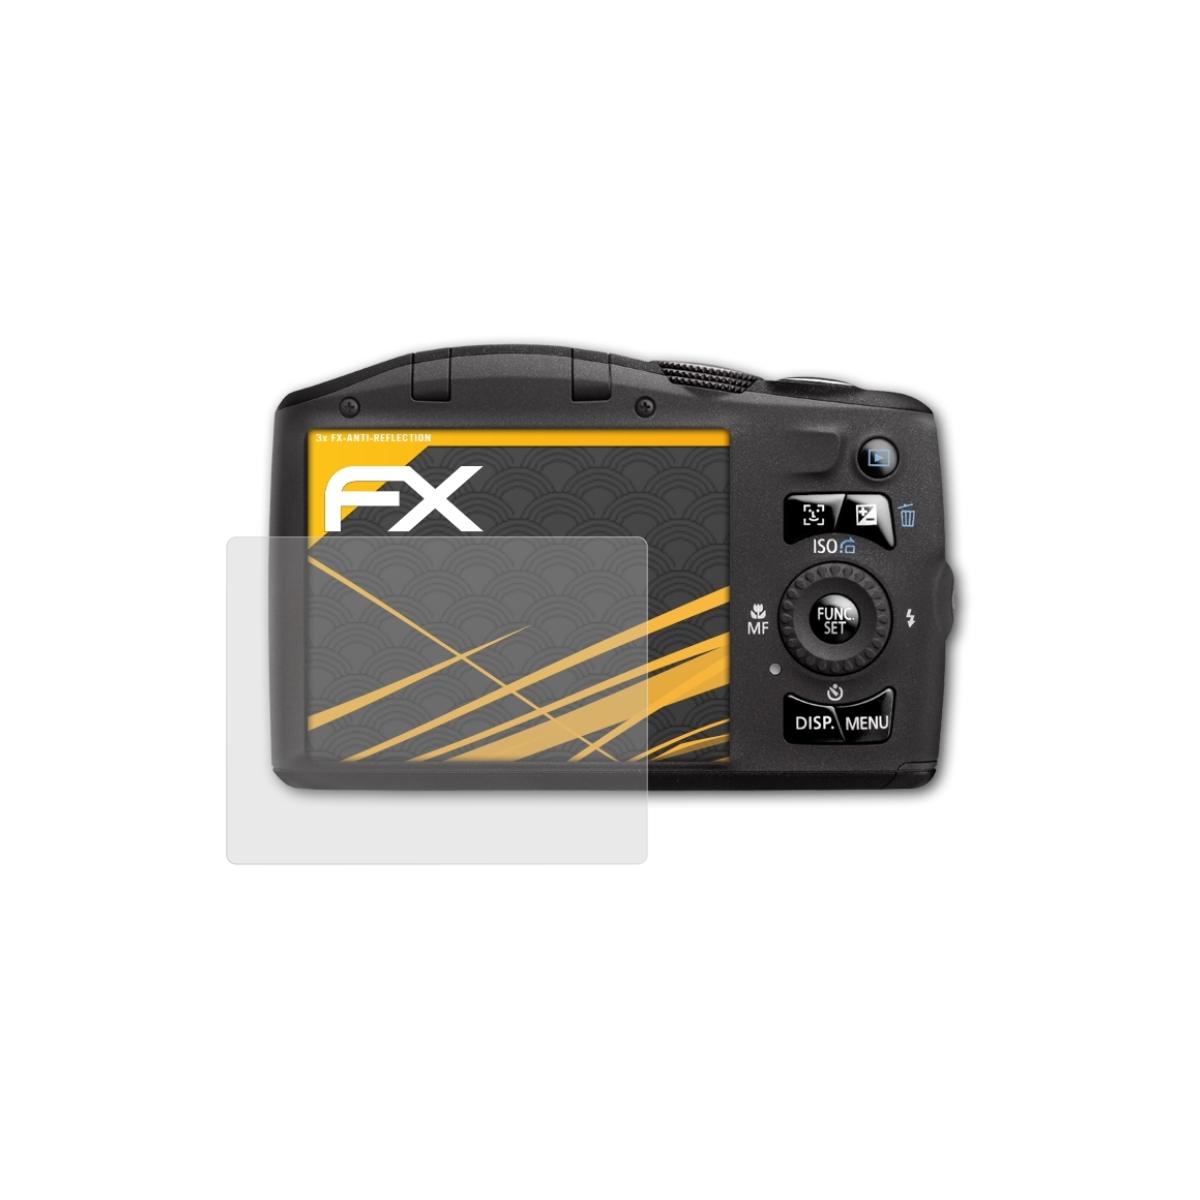 ATFOLIX FX-Antireflex Canon PowerShot IS) 3x SX130 Displayschutz(für